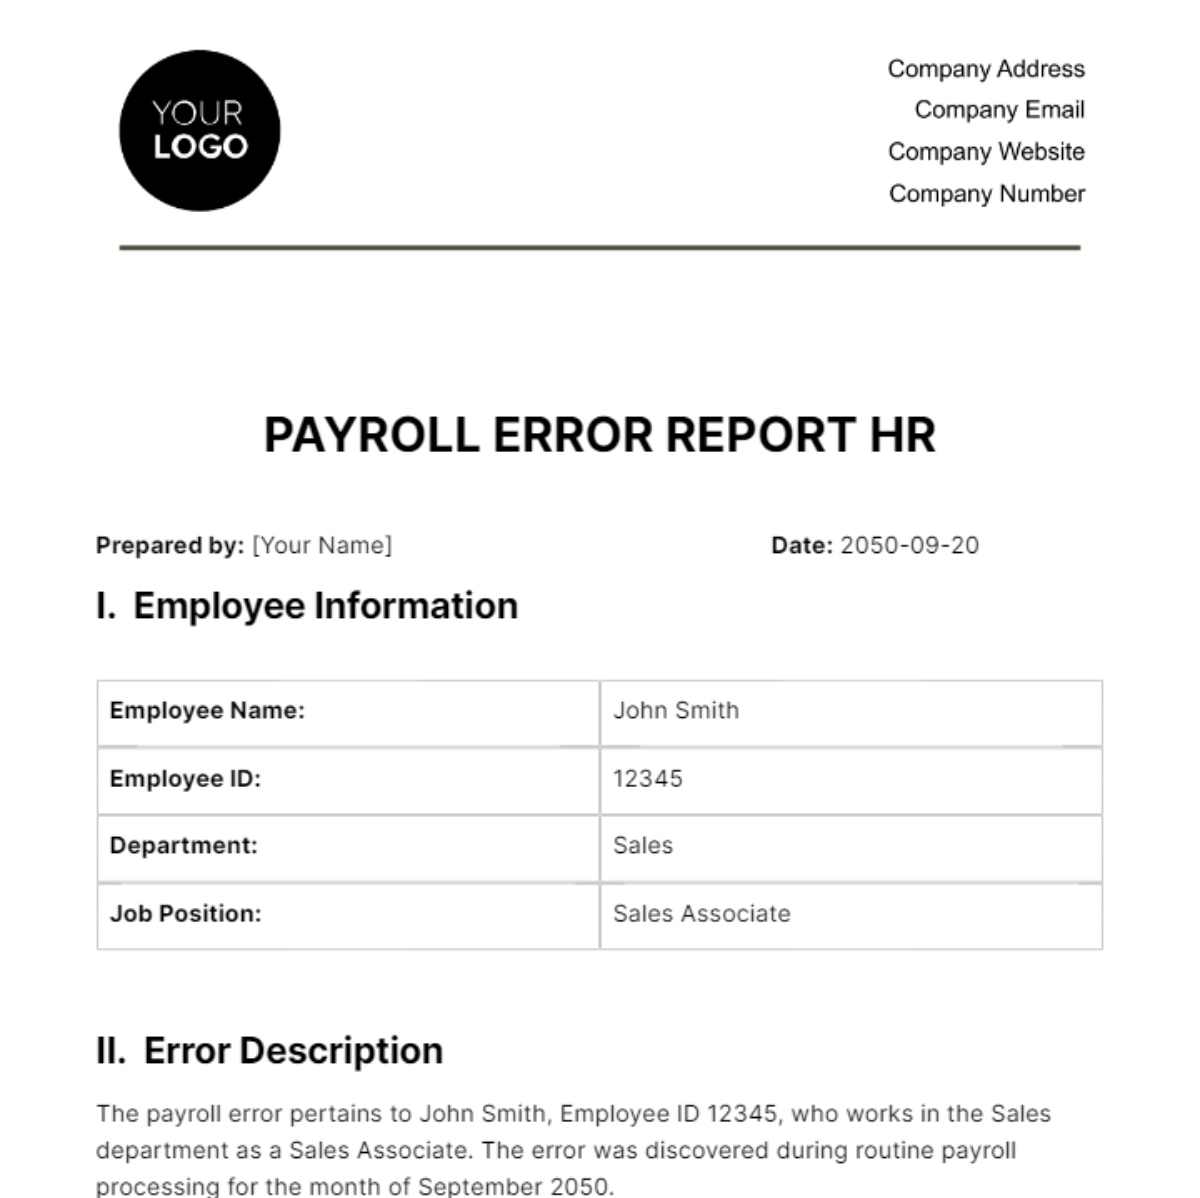 Payroll Error Report HR Template